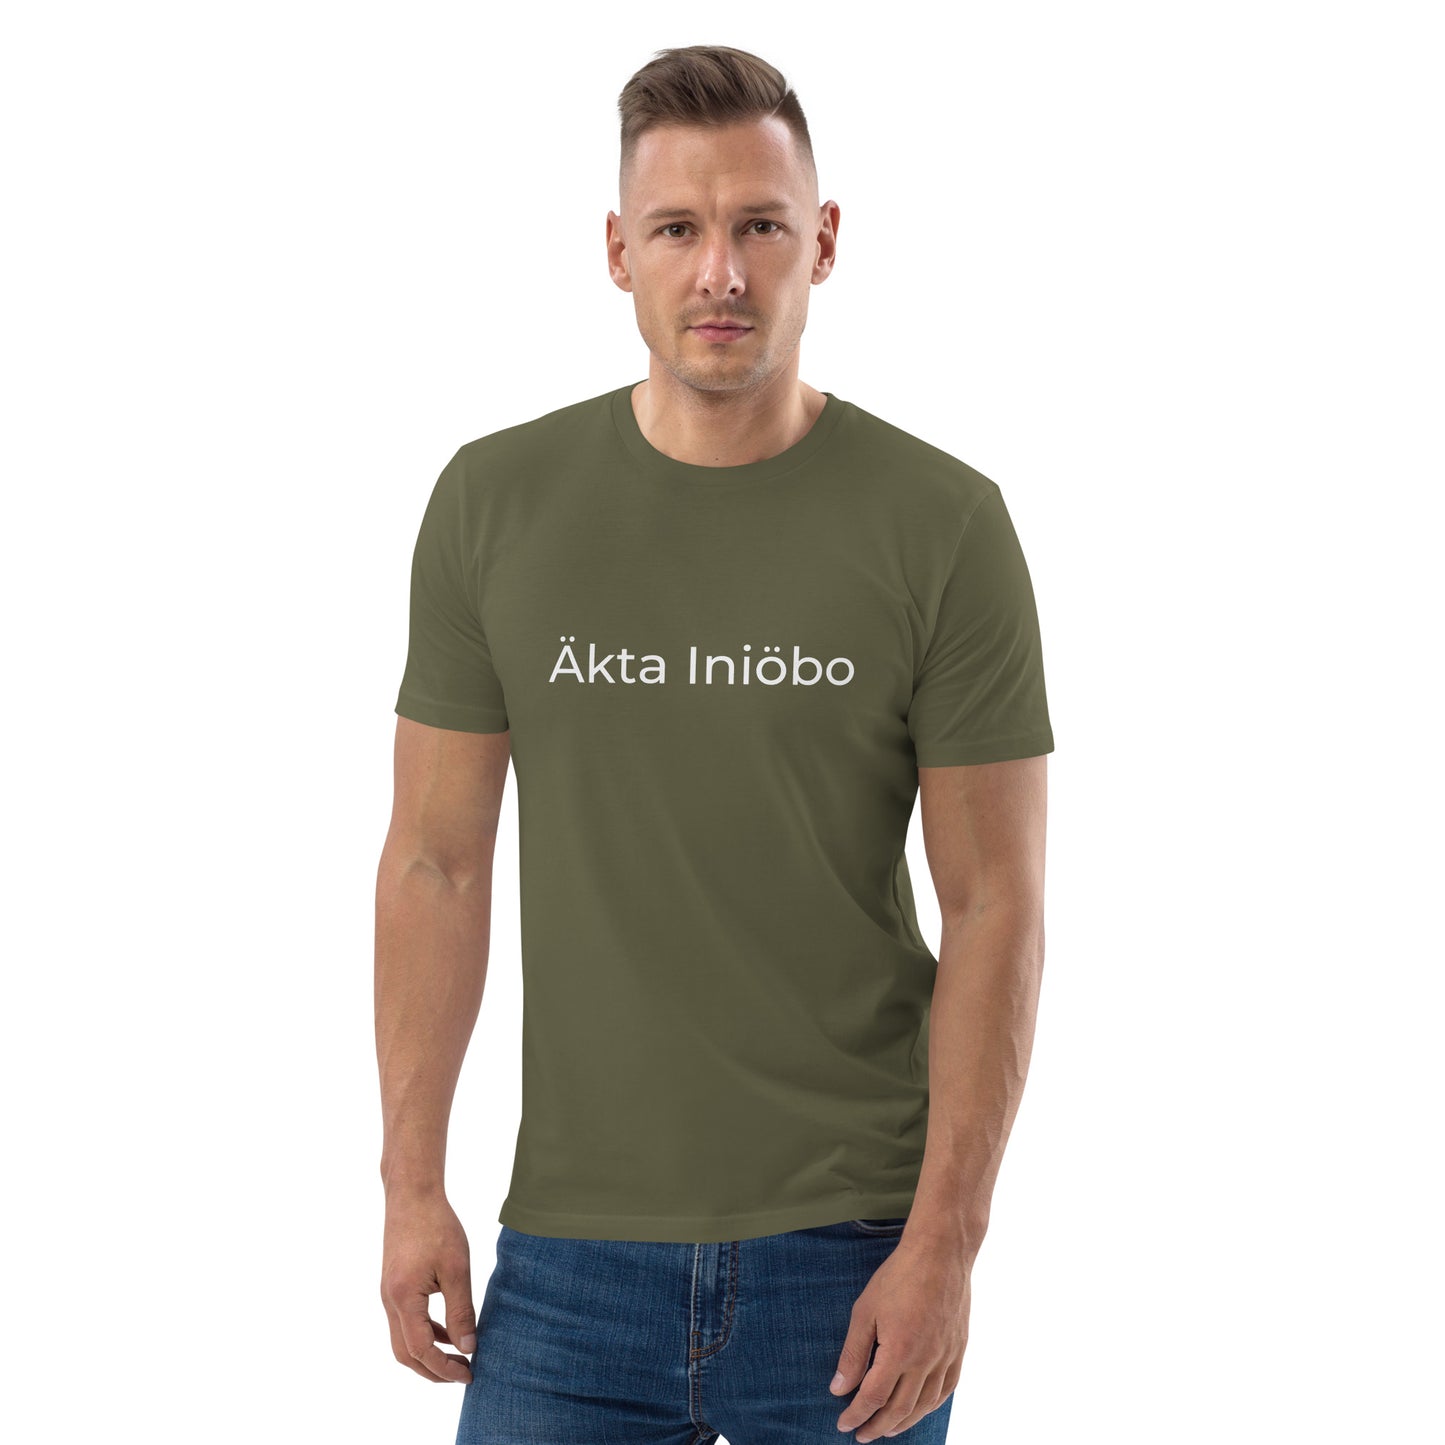 T-shirt Unisex - Äkta Iniöbo